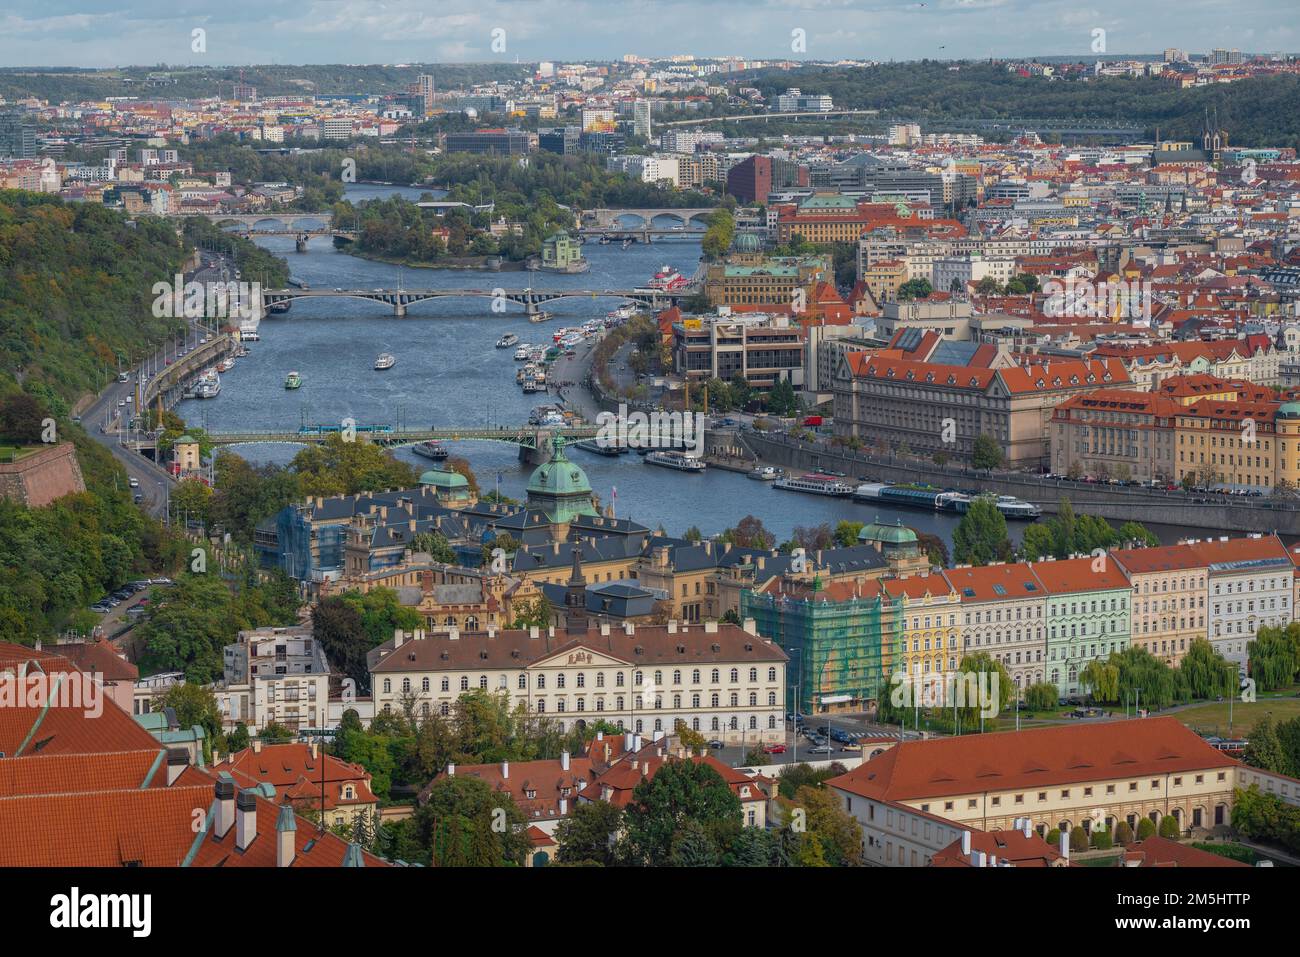 Die Moldau und die Prager Brücken aus der Vogelperspektive - Prag, Tschechische Republik Stockfoto